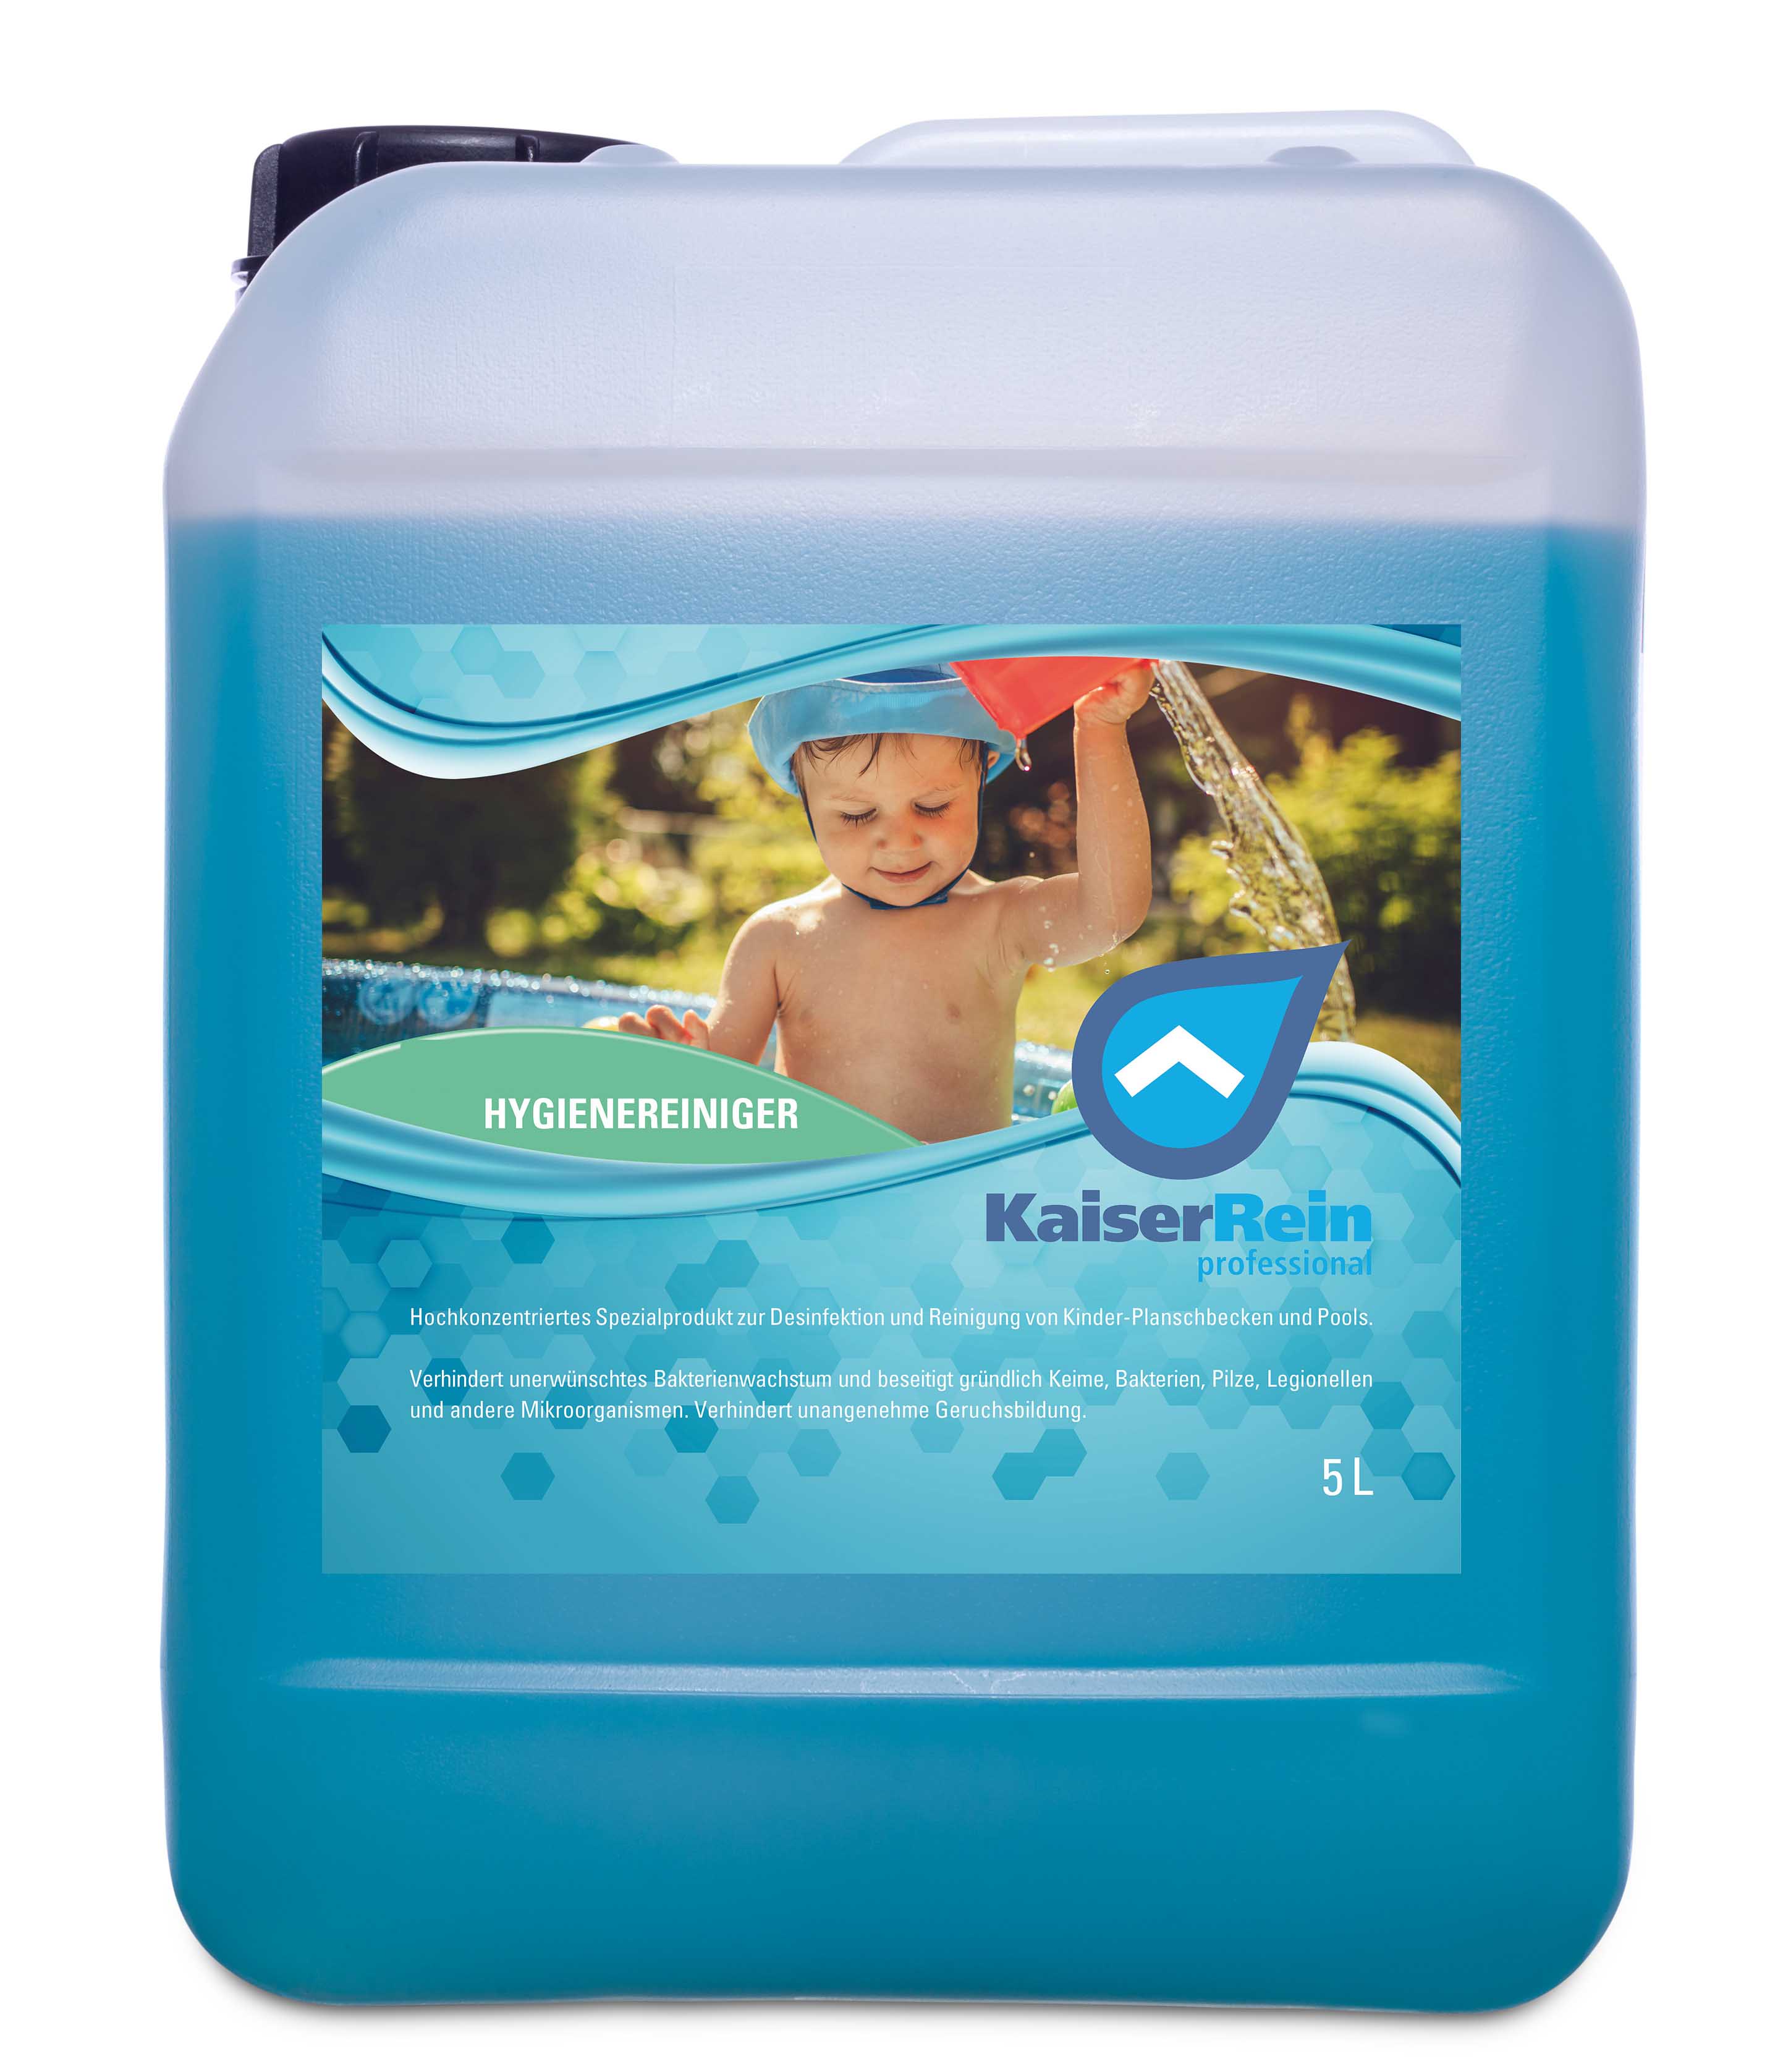  Planschbecken und Pool Desinfektion 5 L Kanister Spezialprodukt zur Desinfektion und Reinigung von Kinder- Planschbecken